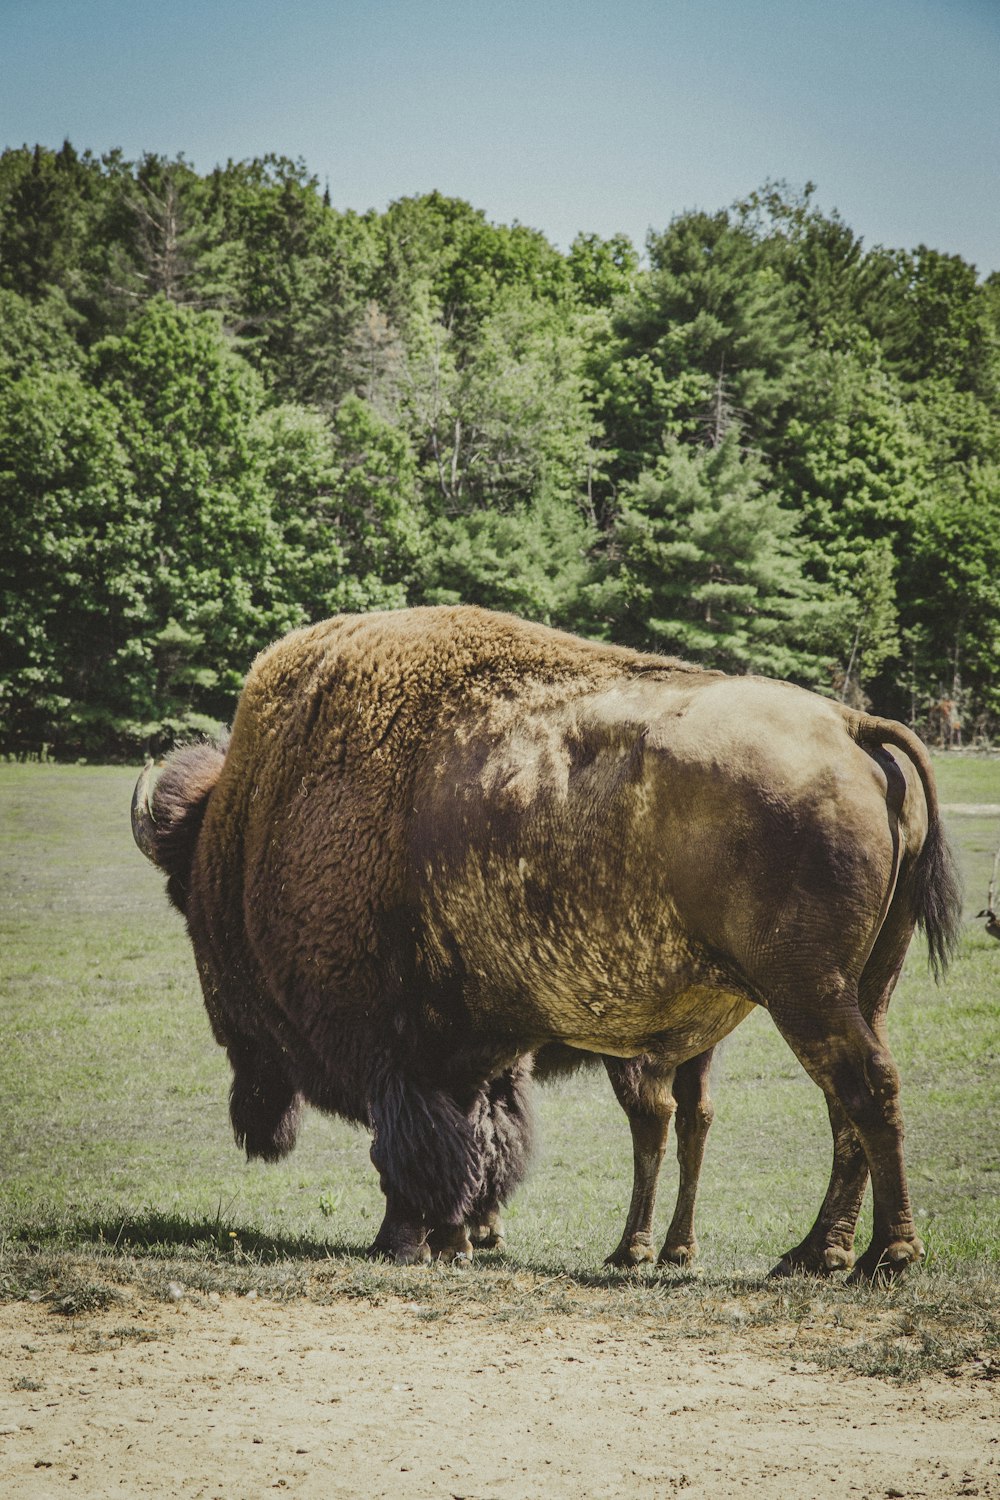 bison adulte sur un champ d’herbe